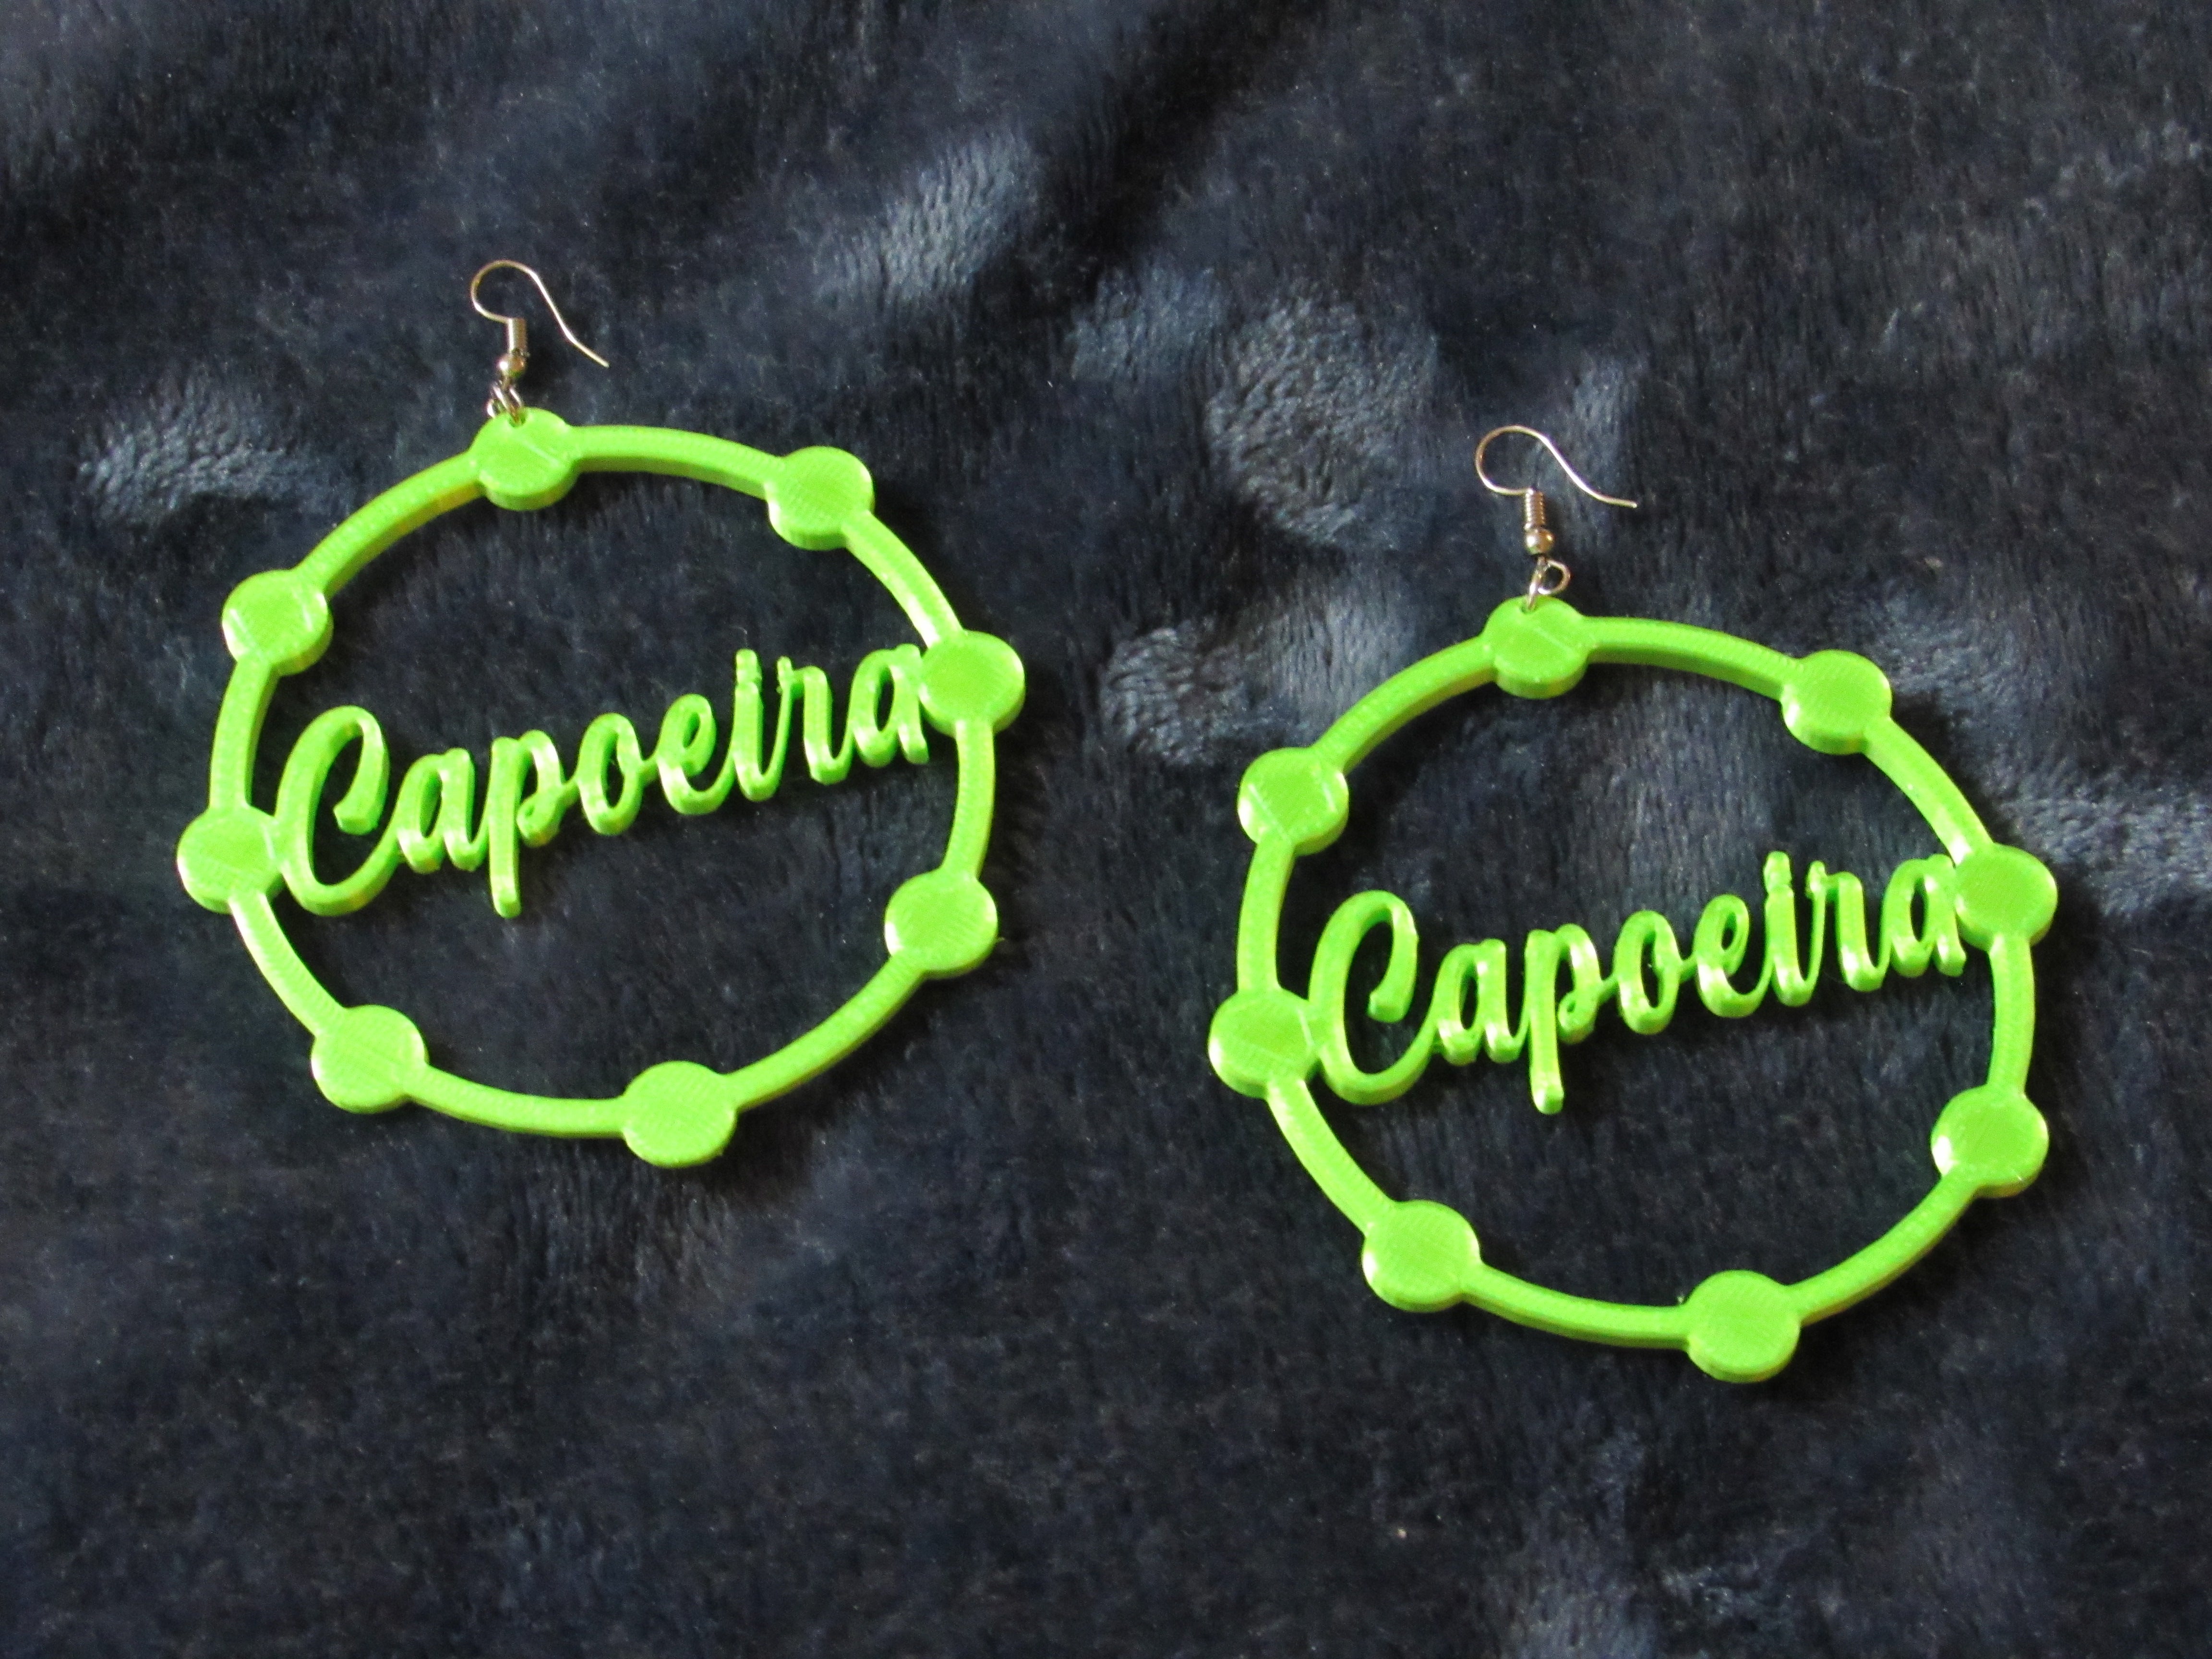 Capoeira 3D Printing Pandeiro Earrings Jewelry